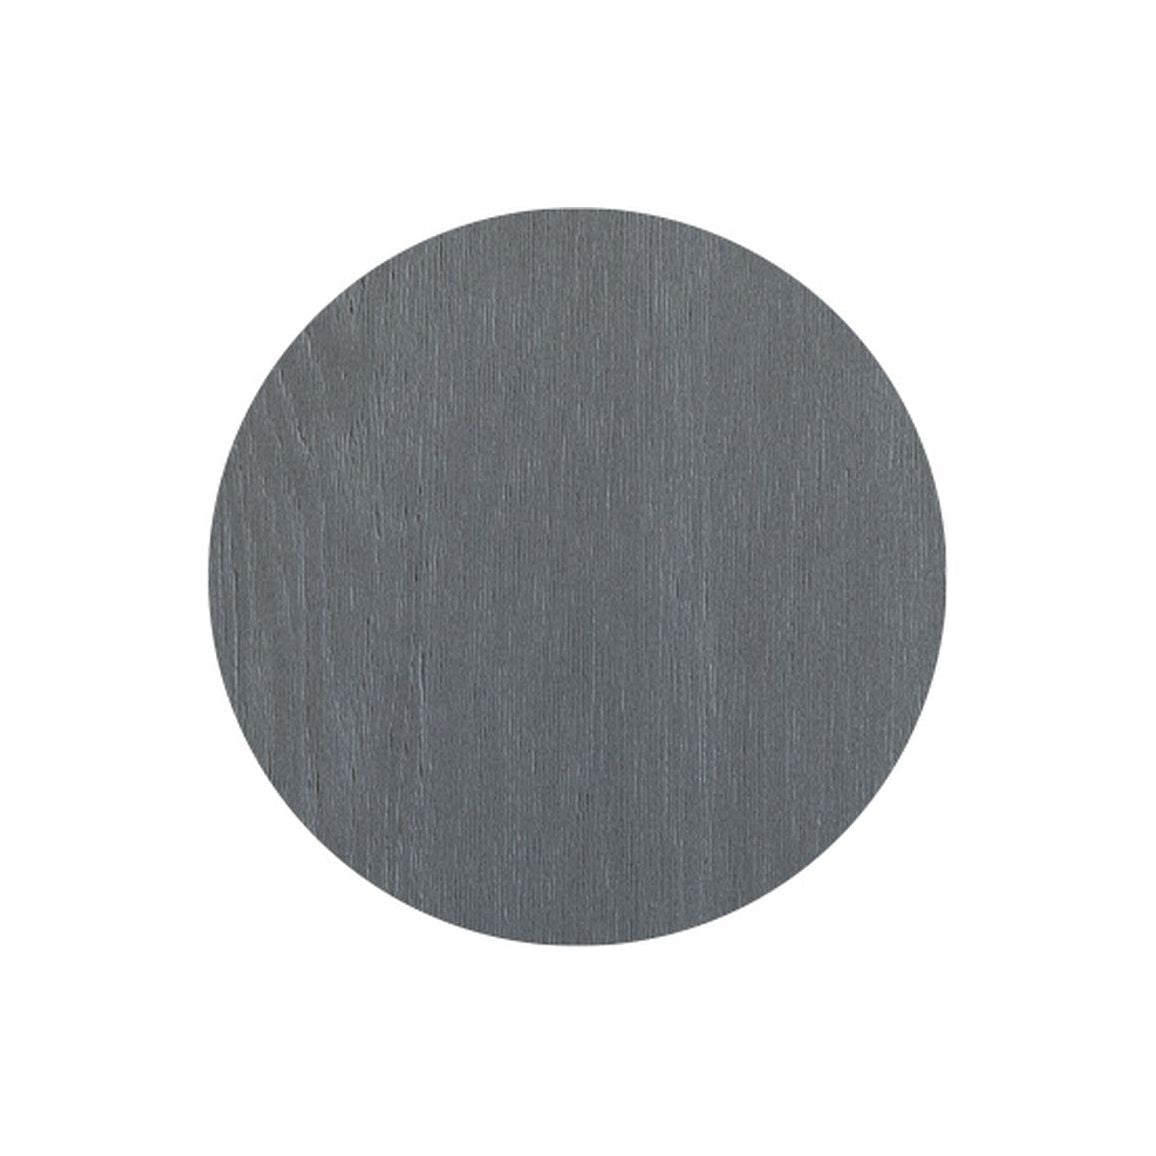 Panel final alto Berry de 2200 x 330 mm - Ceniza gris